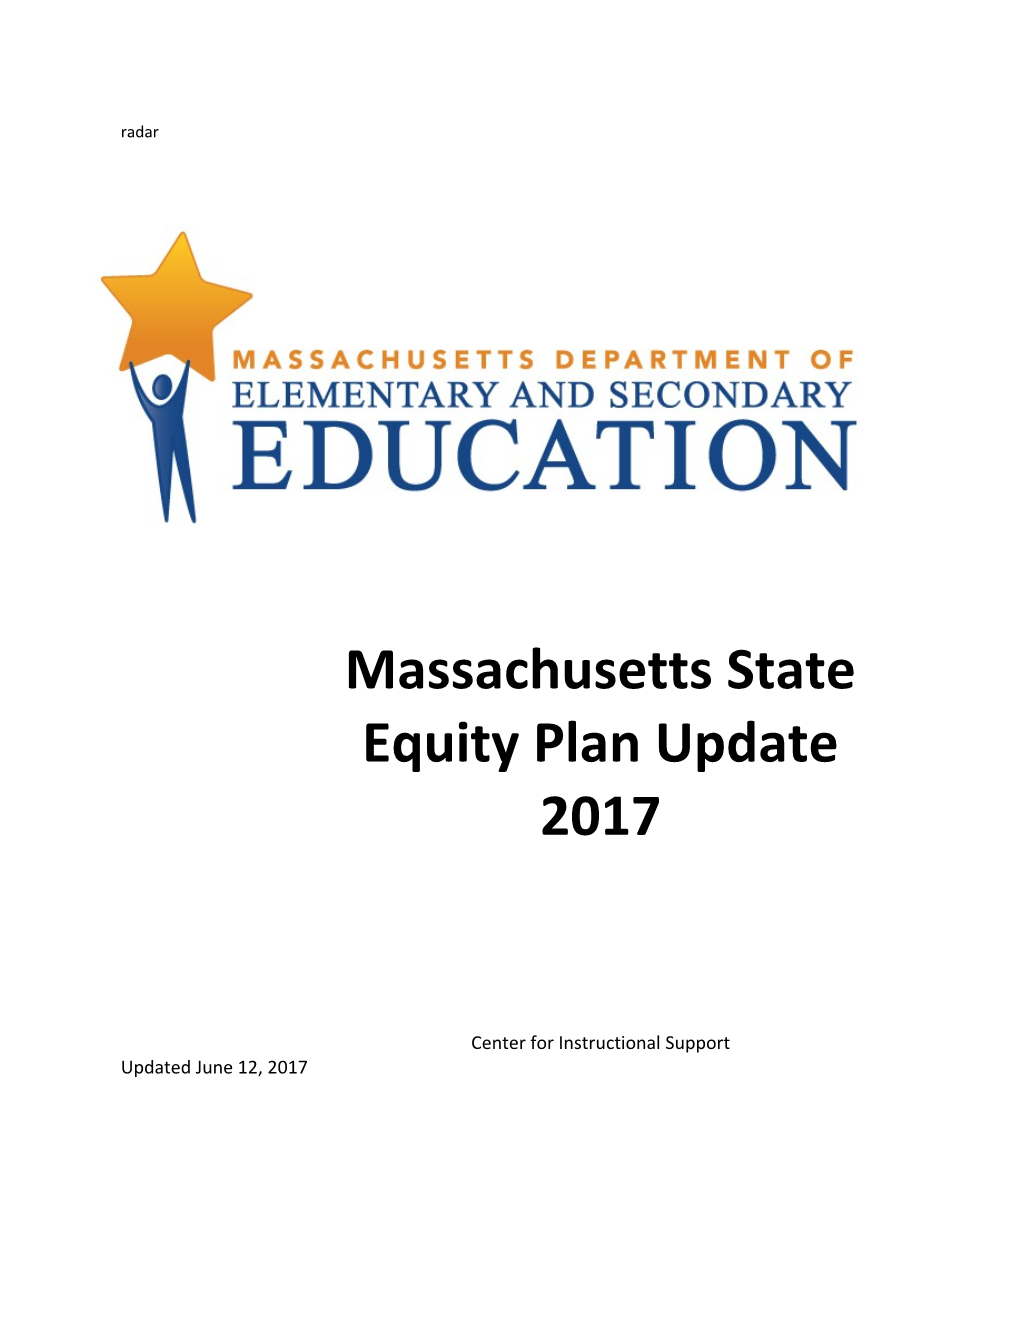 Massachusetts State Equity Update